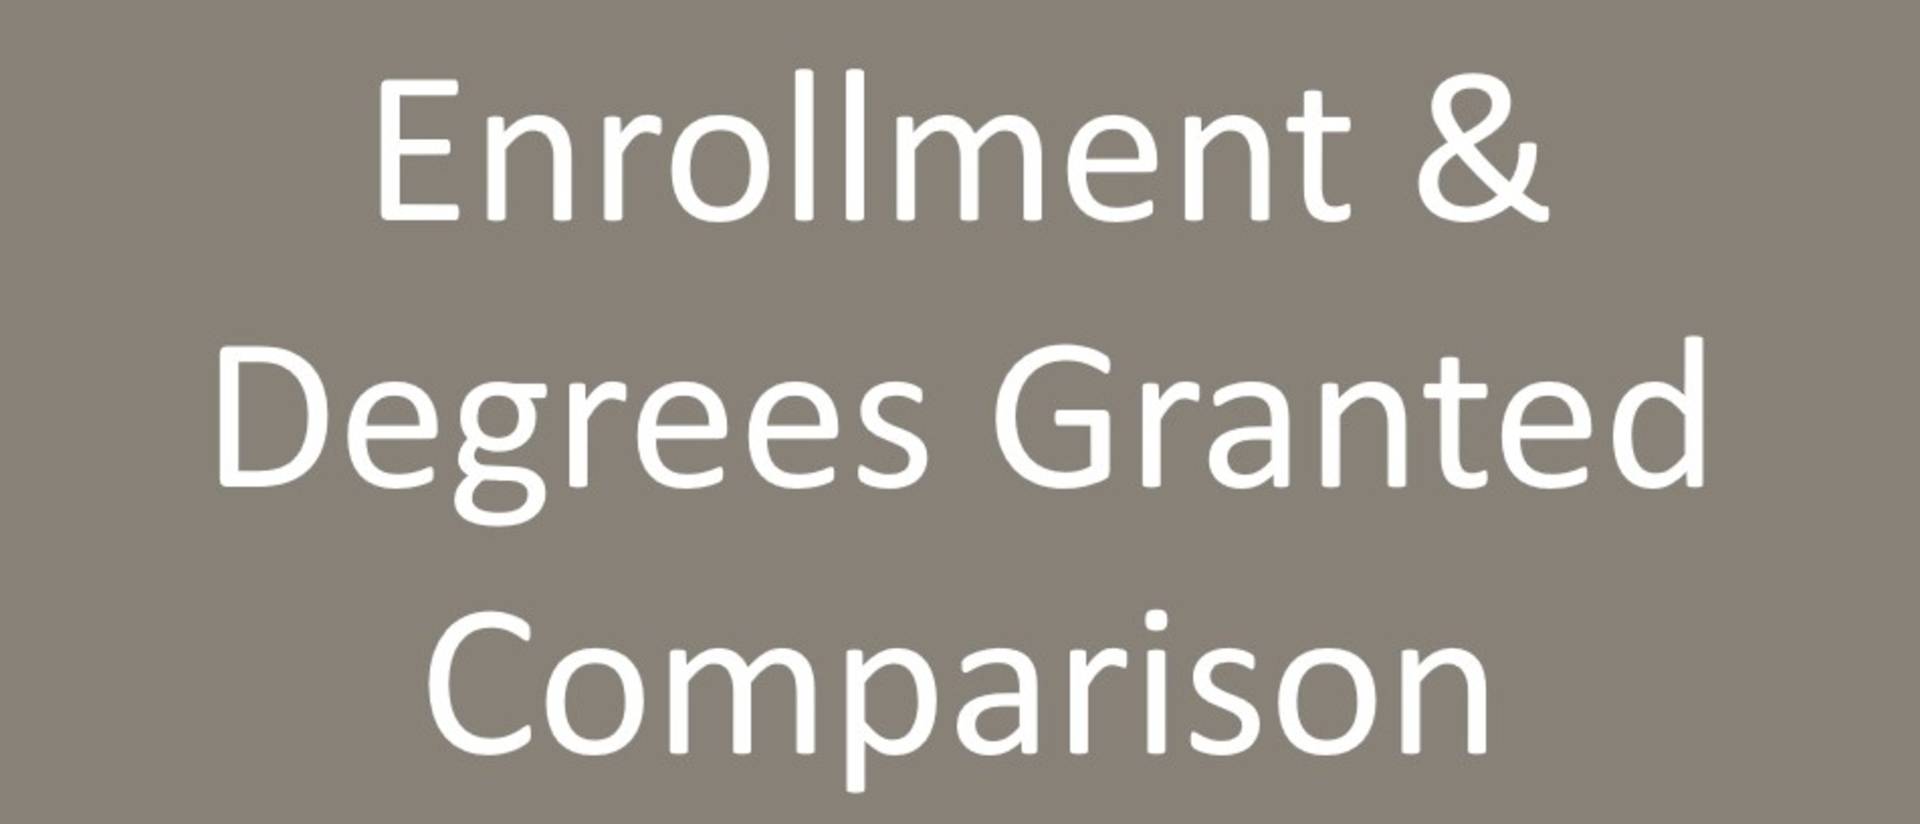 Enrollment & Degrees Granted Comparison